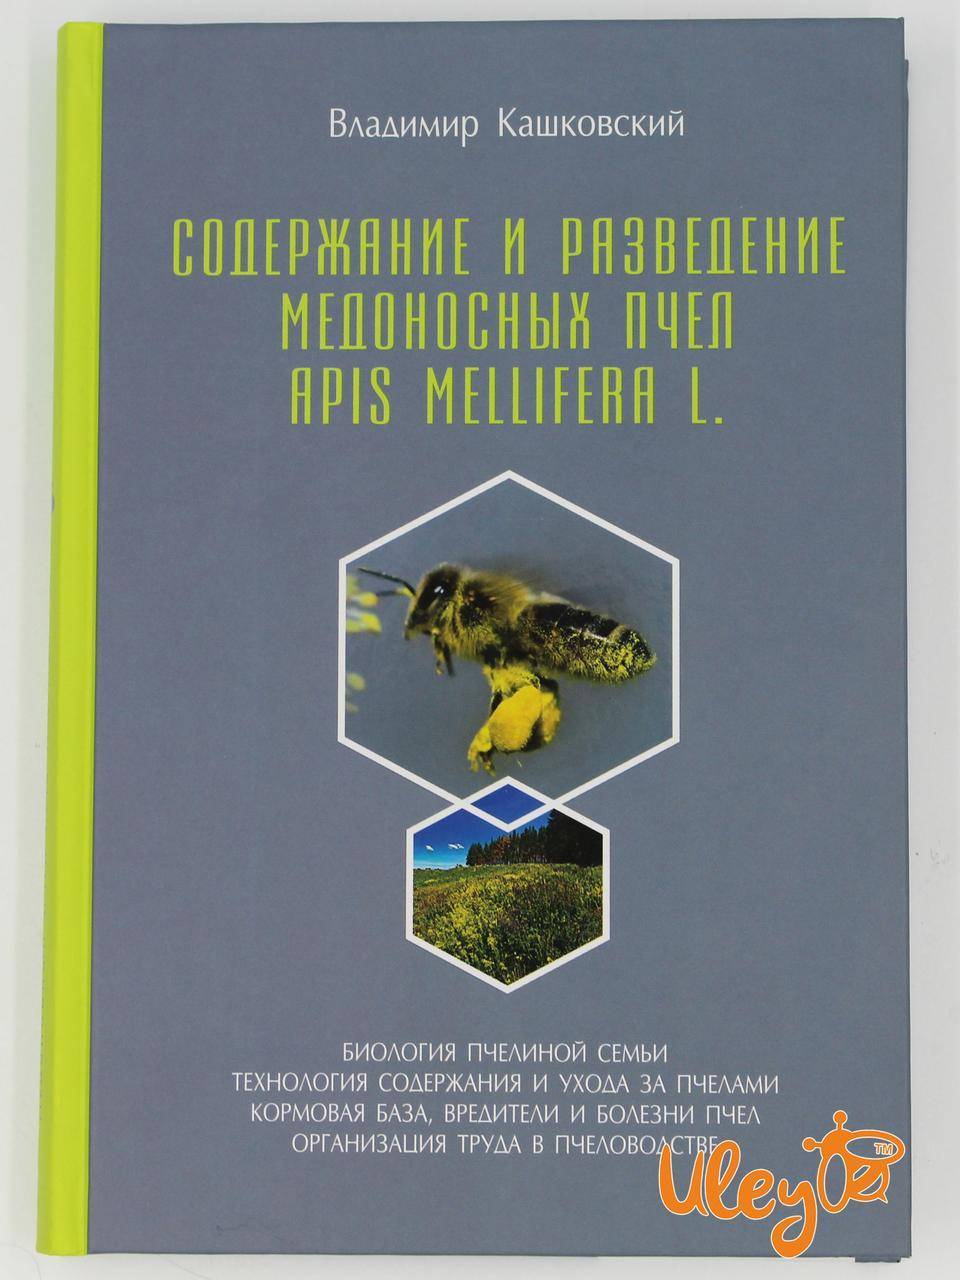 Полный курс видео и лекции по пчеловодству от кашковского
полный курс видео и лекции по пчеловодству от кашковского